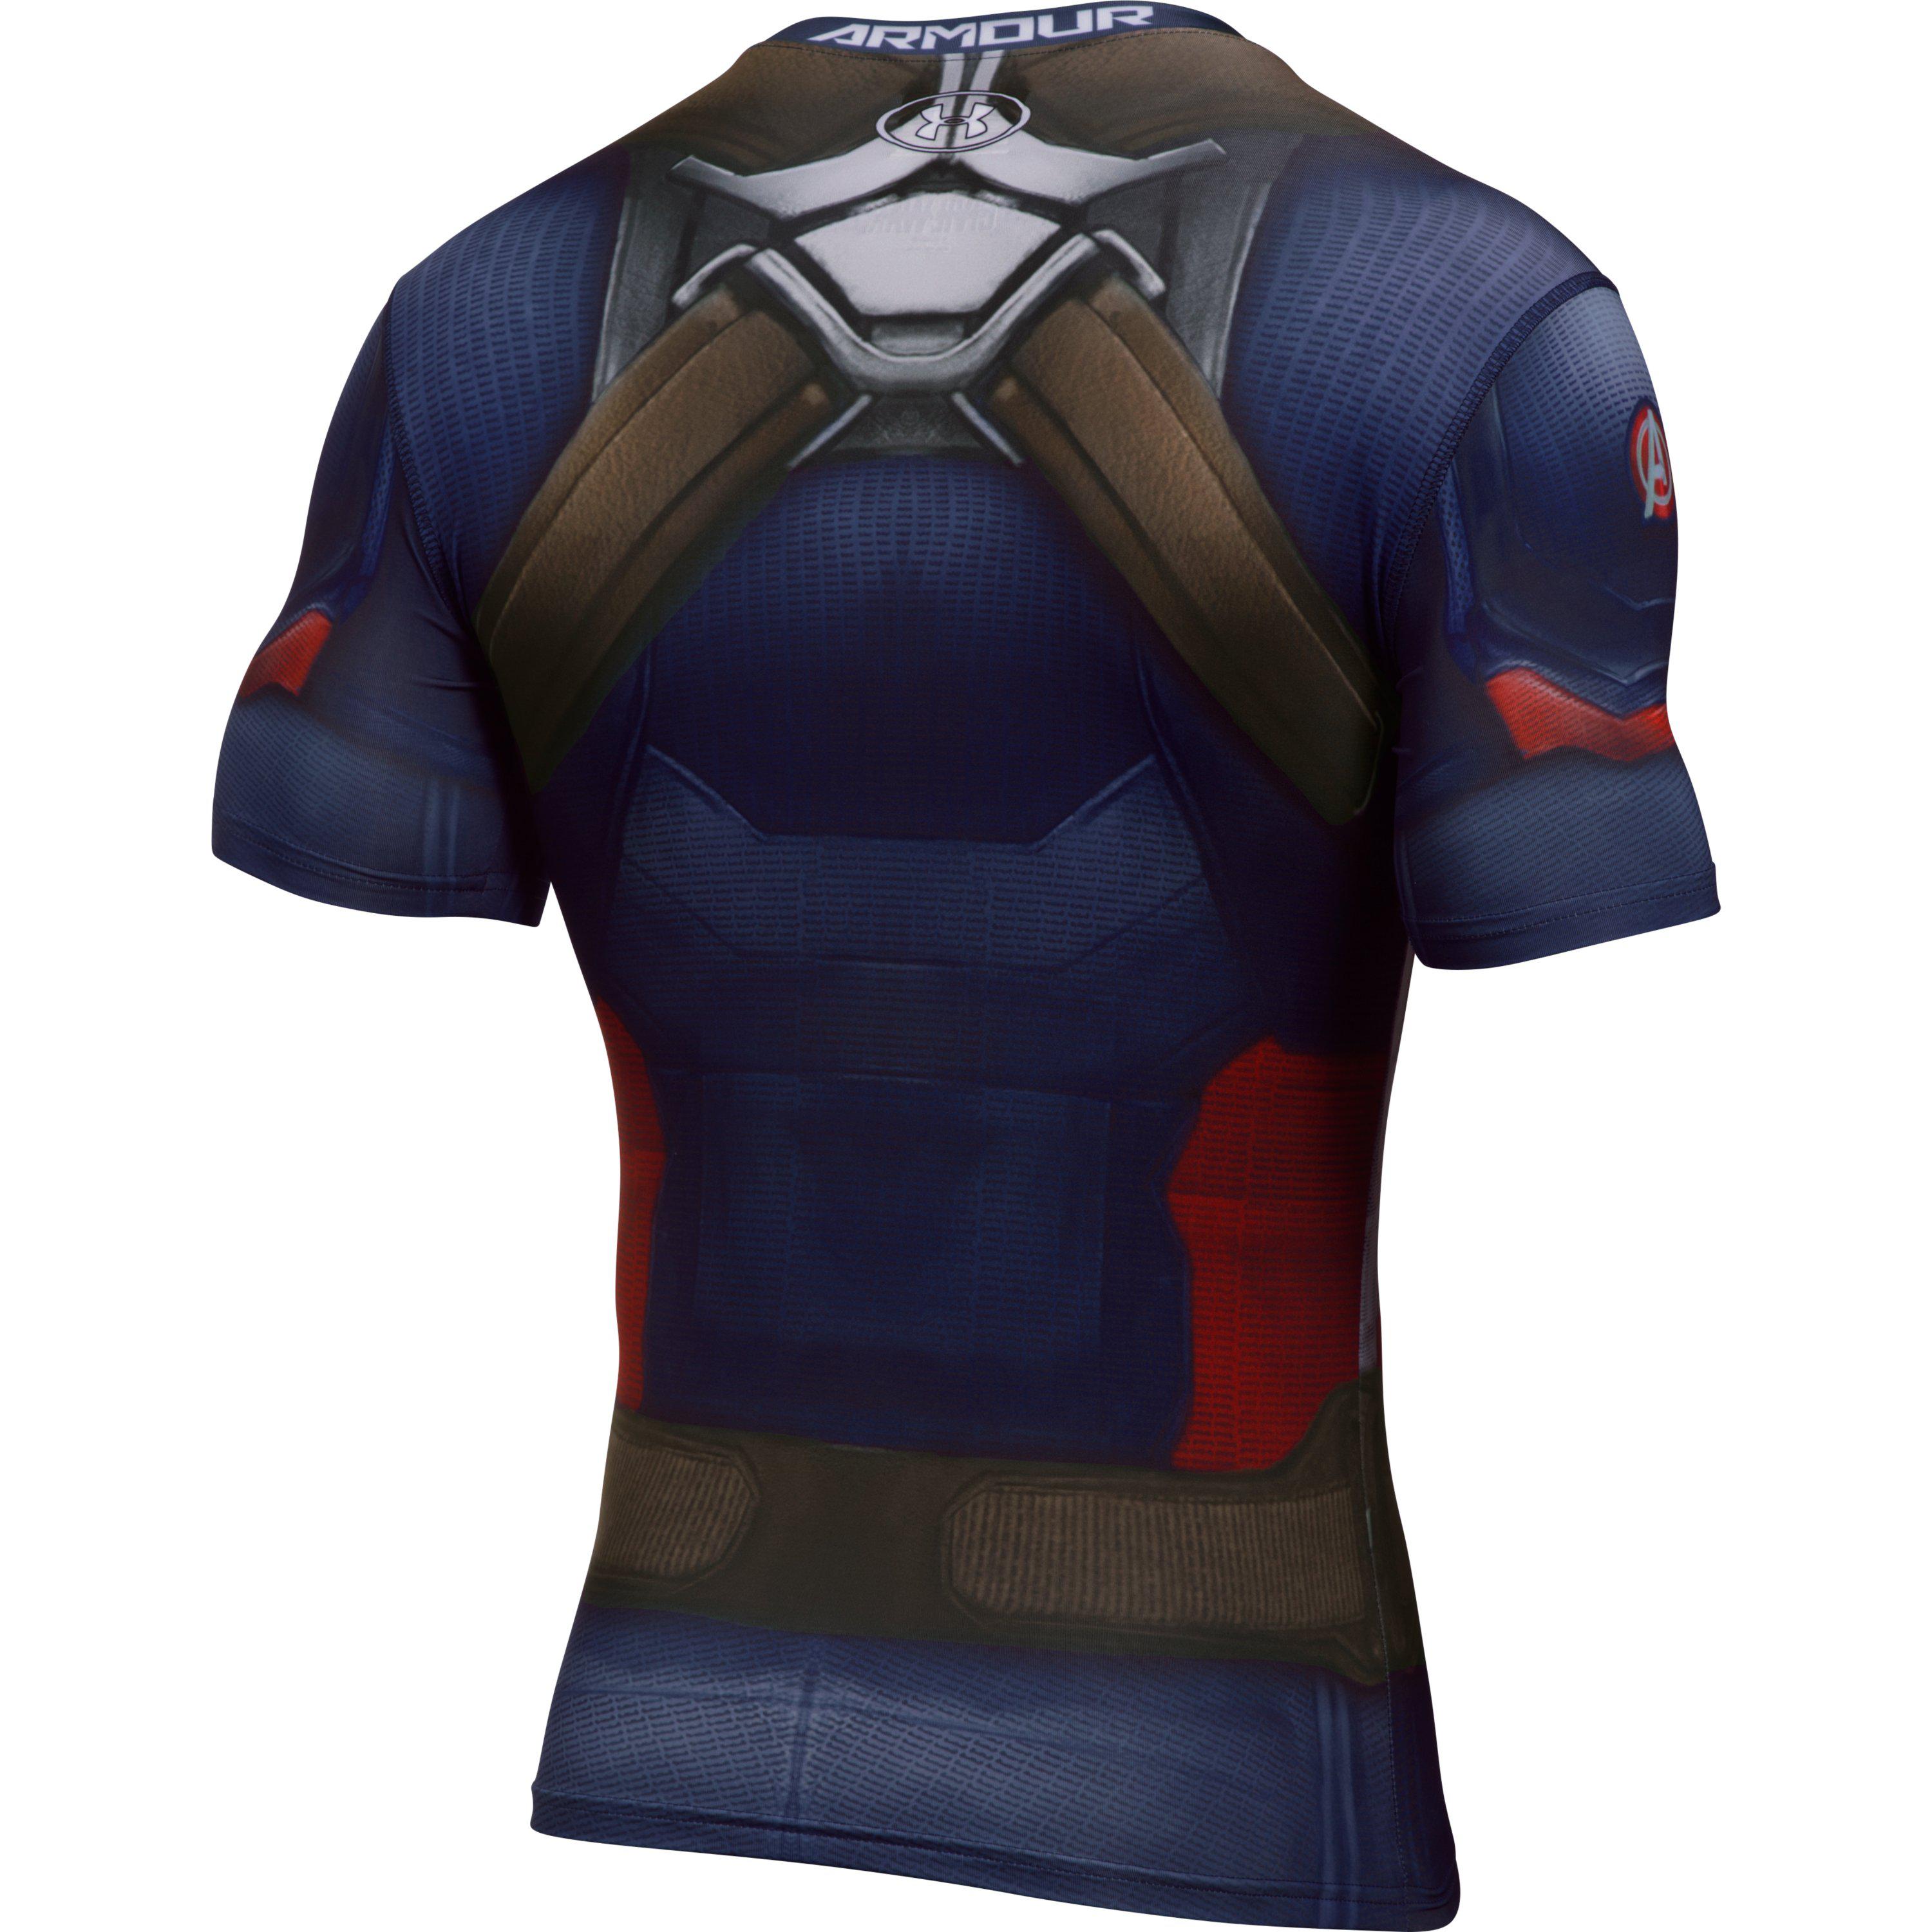 Under Armour Alter Ego Superhero Compression Shirts